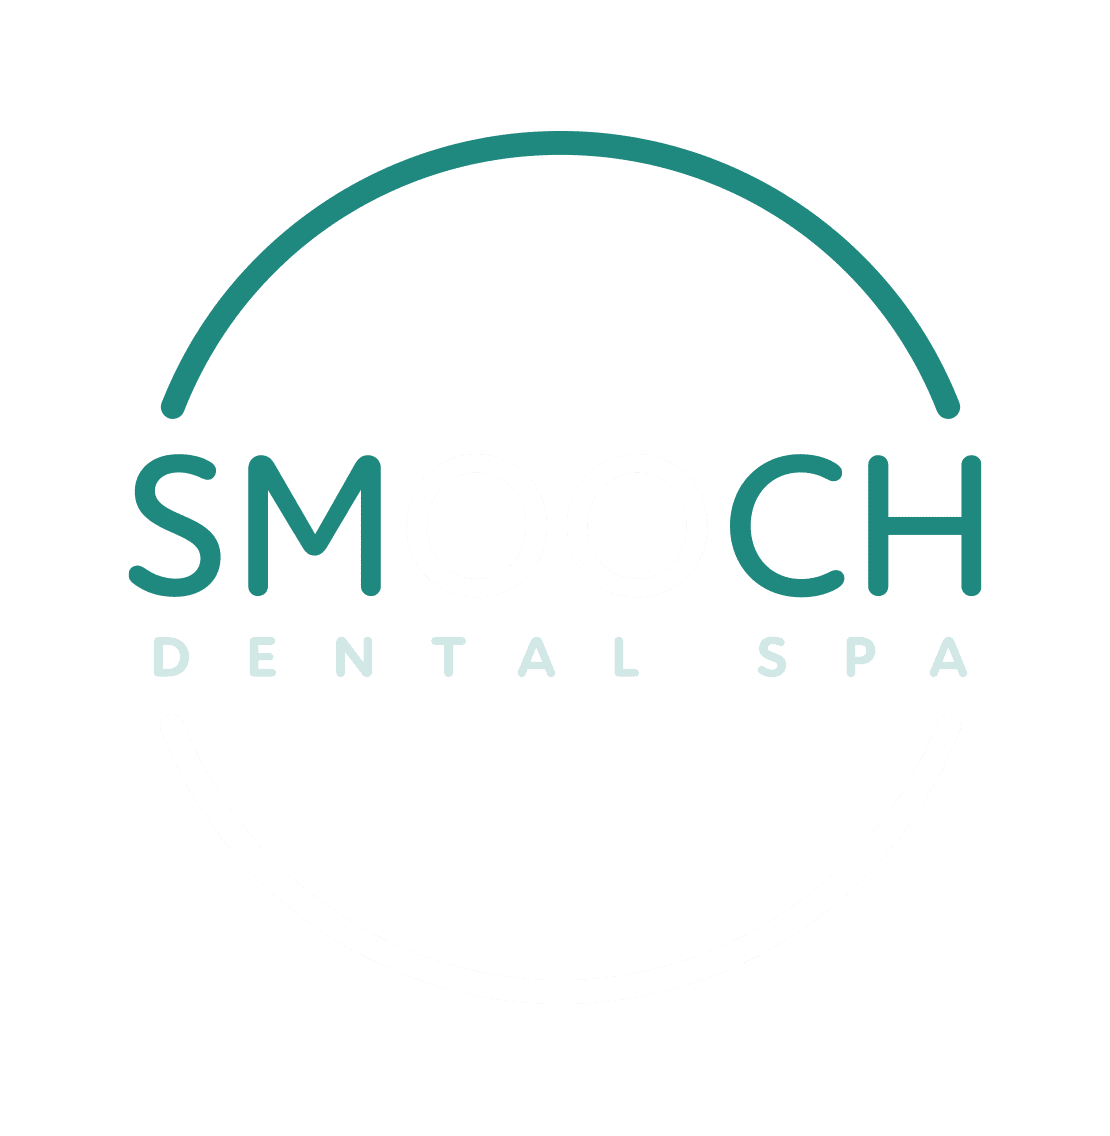 SMOOCH Dental Spa